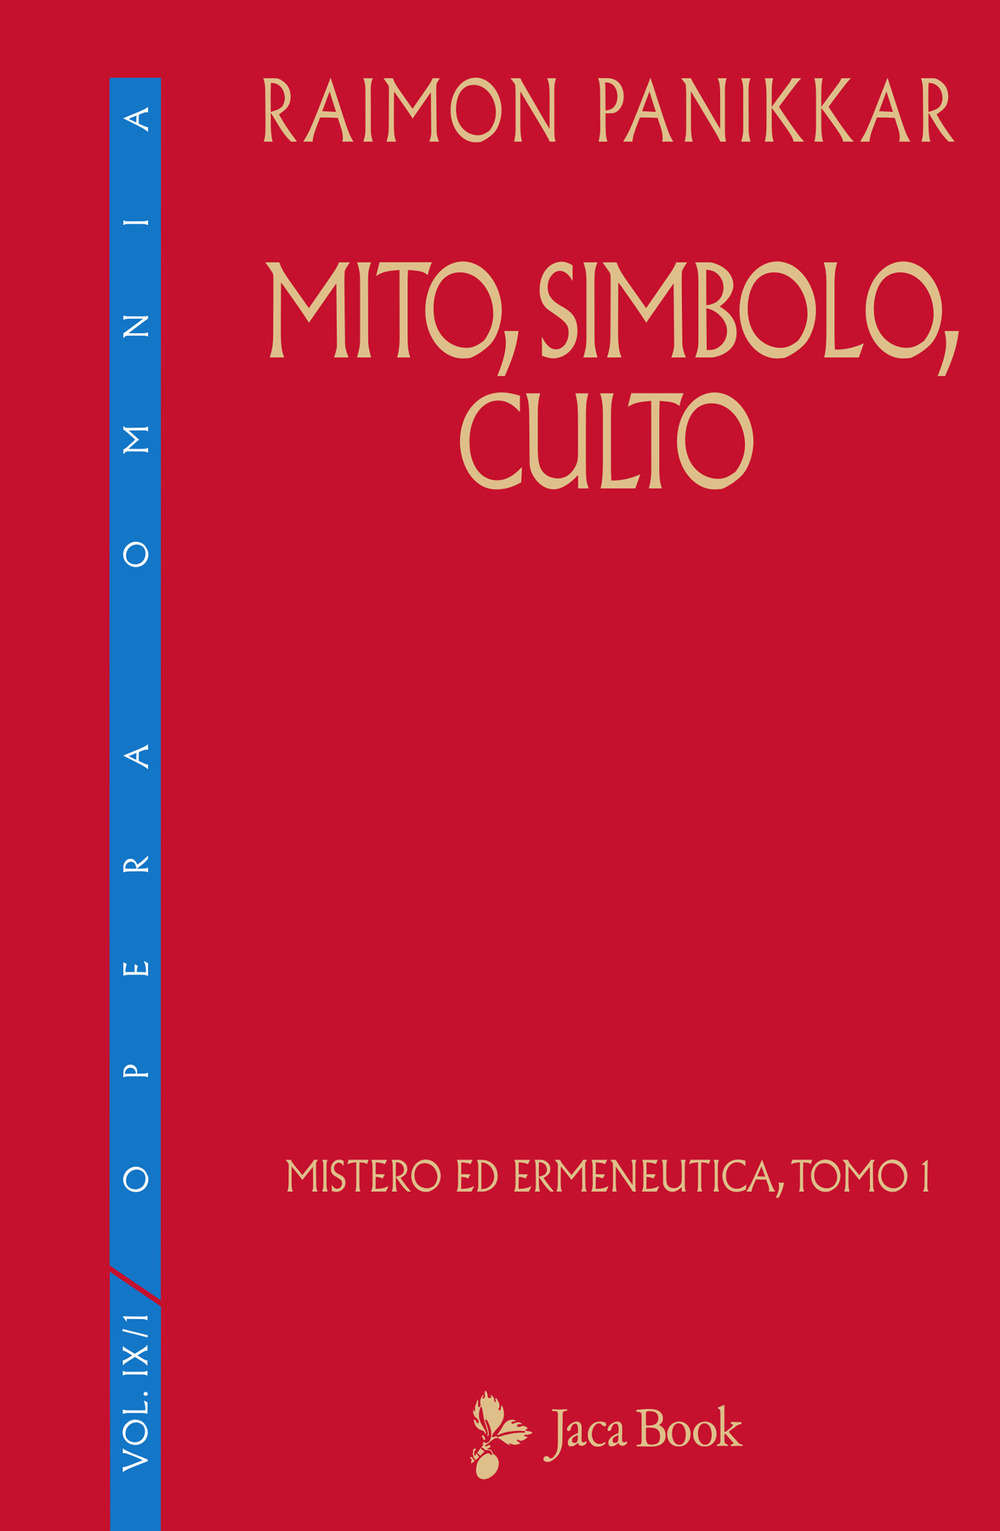 Libri Raimon Panikkar - Mito, Simbolo, Culto NUOVO SIGILLATO, EDIZIONE DEL 11/02/2021 SUBITO DISPONIBILE